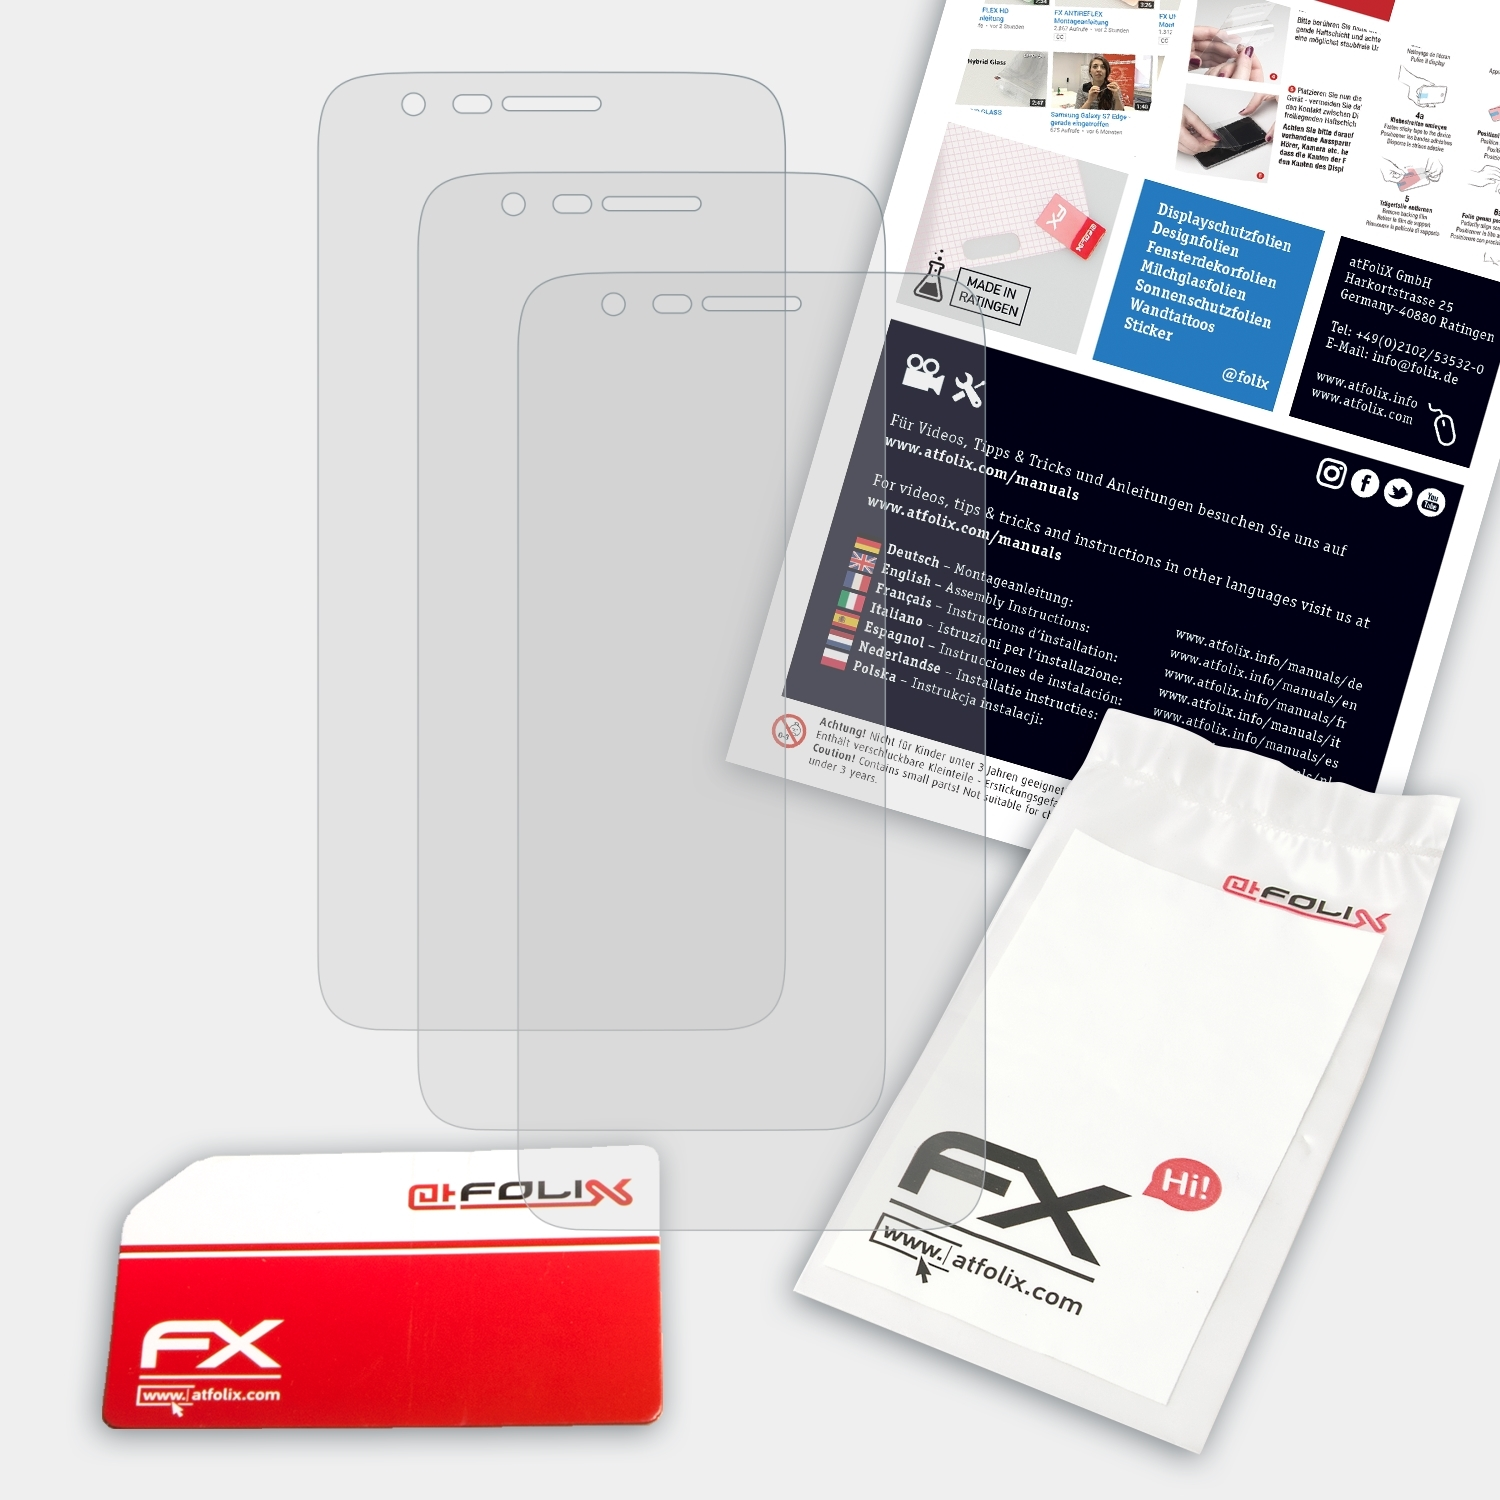 ATFOLIX i803wa) FX-Antireflex Phicomm 3x Displayschutz(für